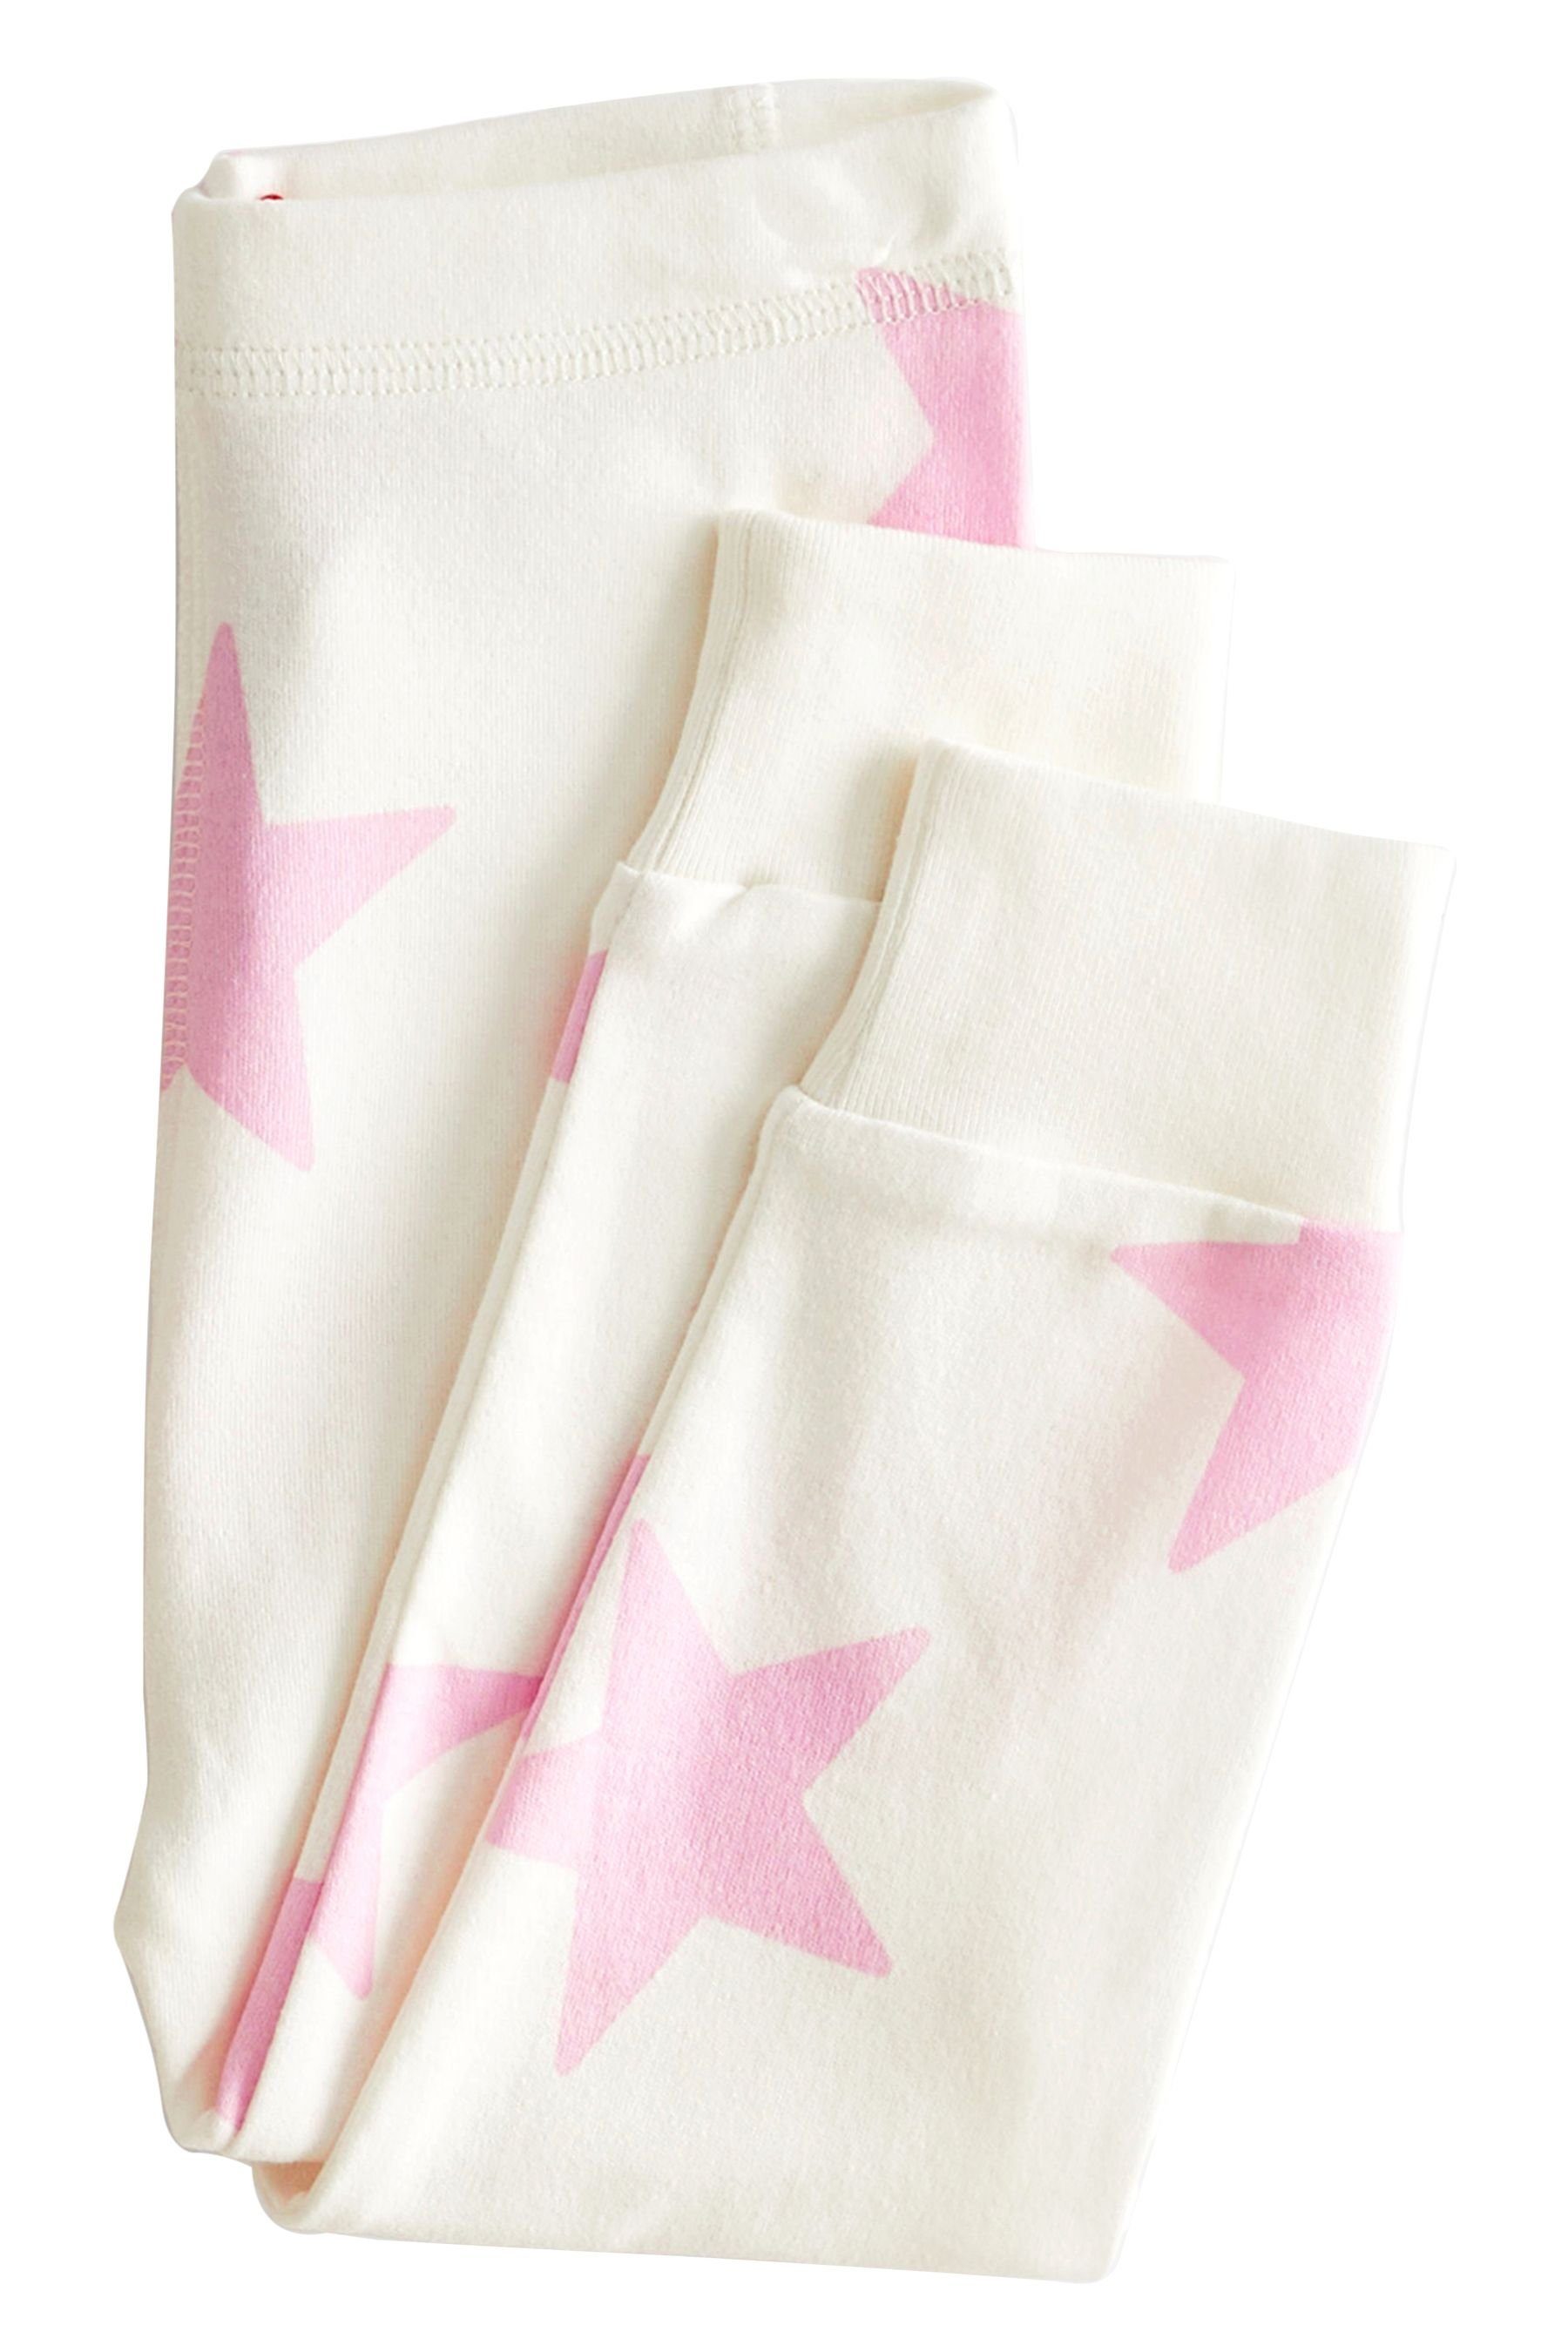 Next Pyjama 3er-Pack mit Sternen Herz-, + tlg) Pink/White (6 Schlafanzüge Punkte